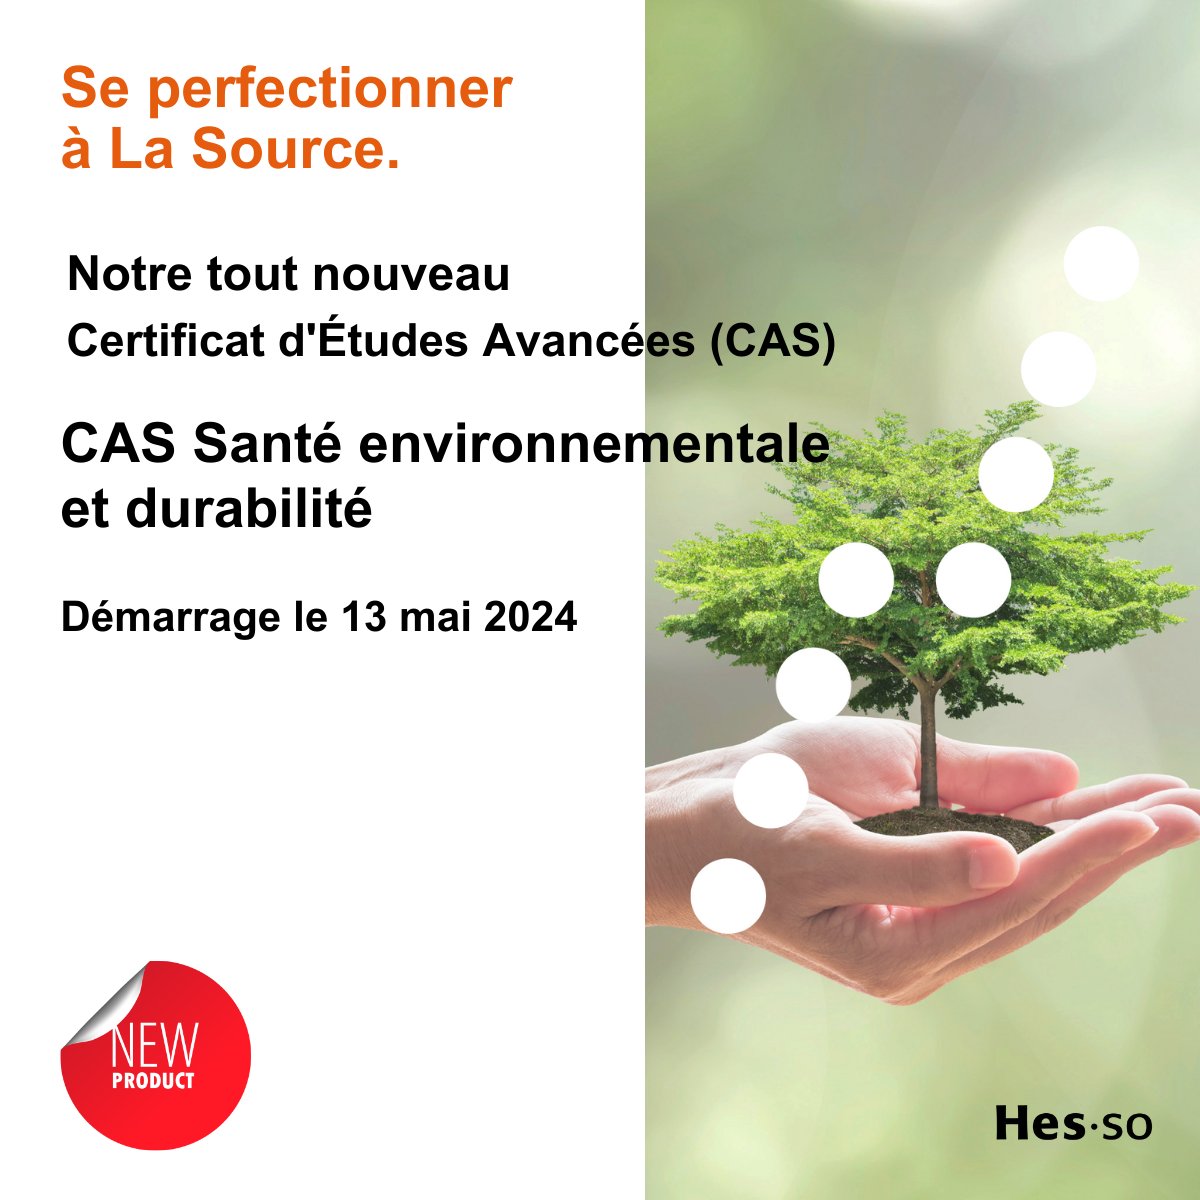 POSTGRADE - CAS Santé environnementale et durabilité - Vous souhaitez en savoir plus? Participez à notre séance d'information en ligne, le mardi 12 mars 2024 à 18h. Inscrivez-vous dès maintenant en envoyant un e-mail à infopostgrade@ecolelasource.ch #formationcontinue #CAS